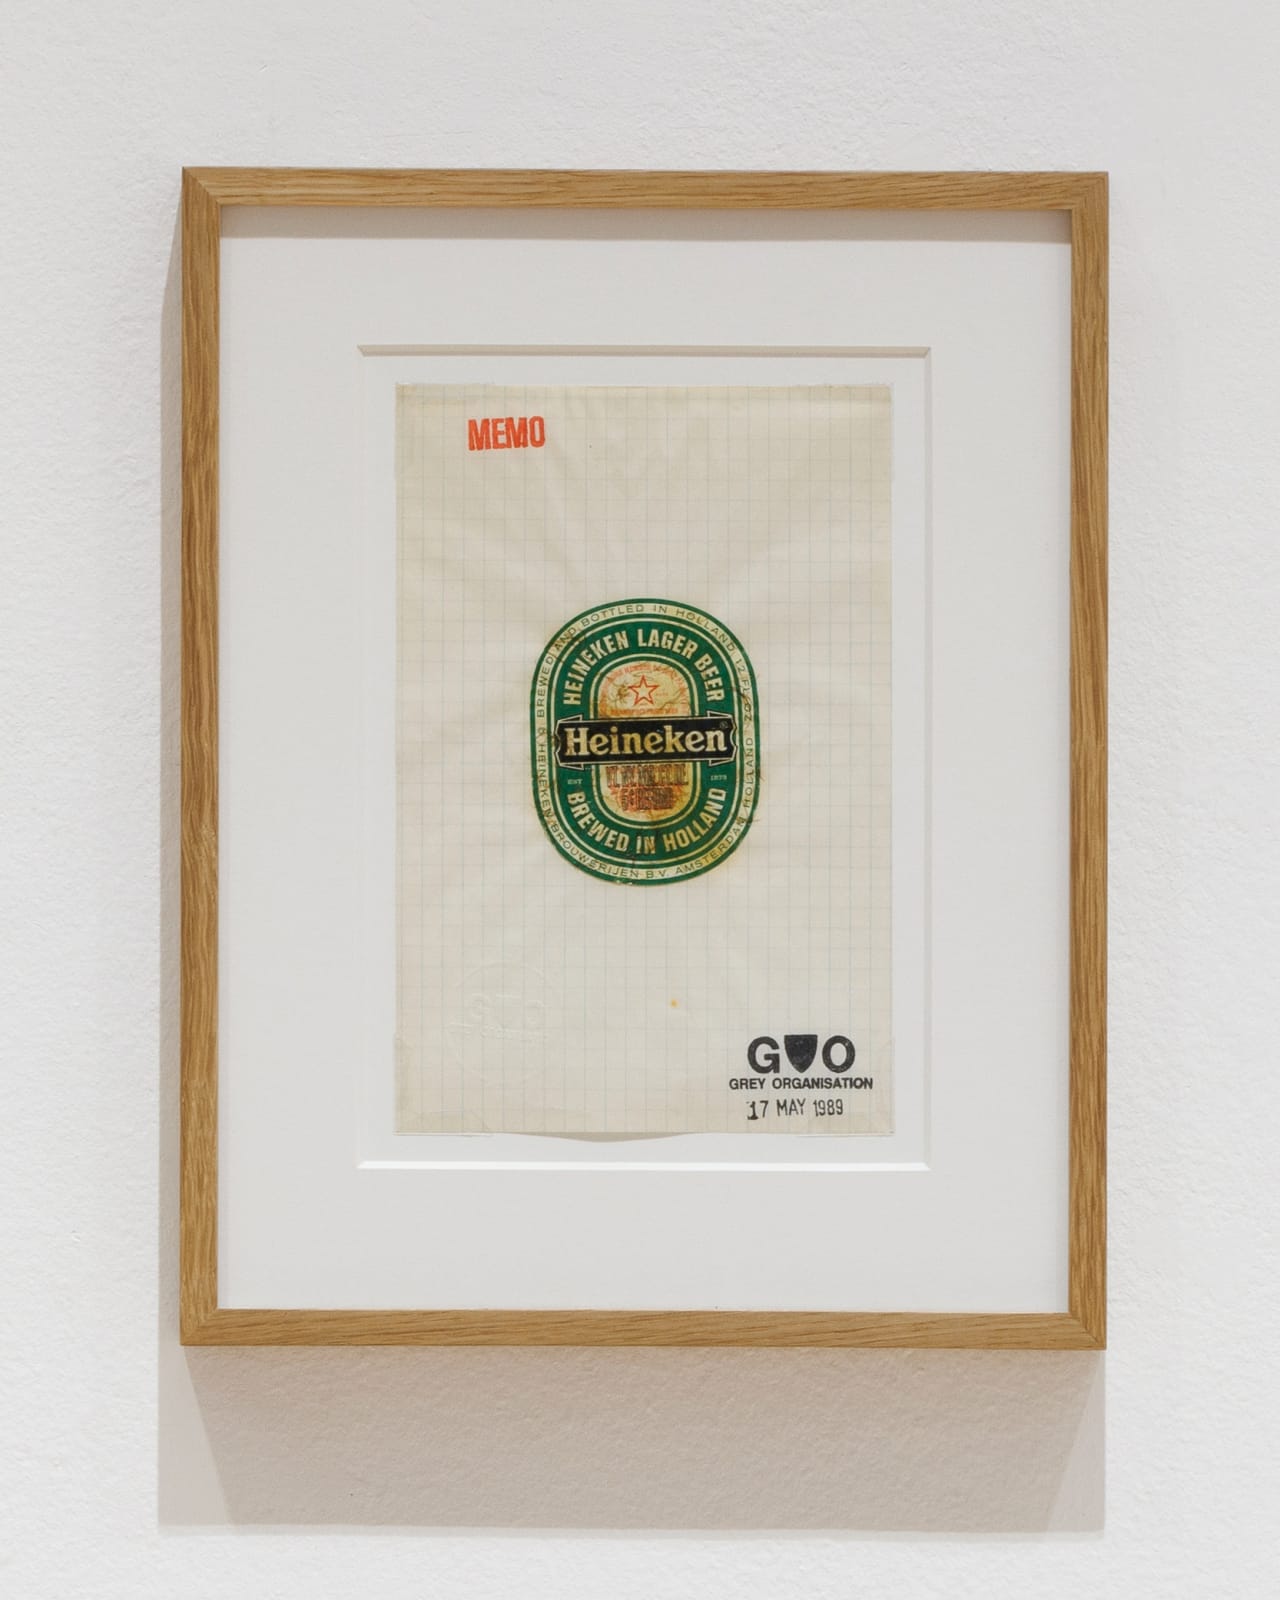 GREY ORGANISATION, Heineken Lager, 1989